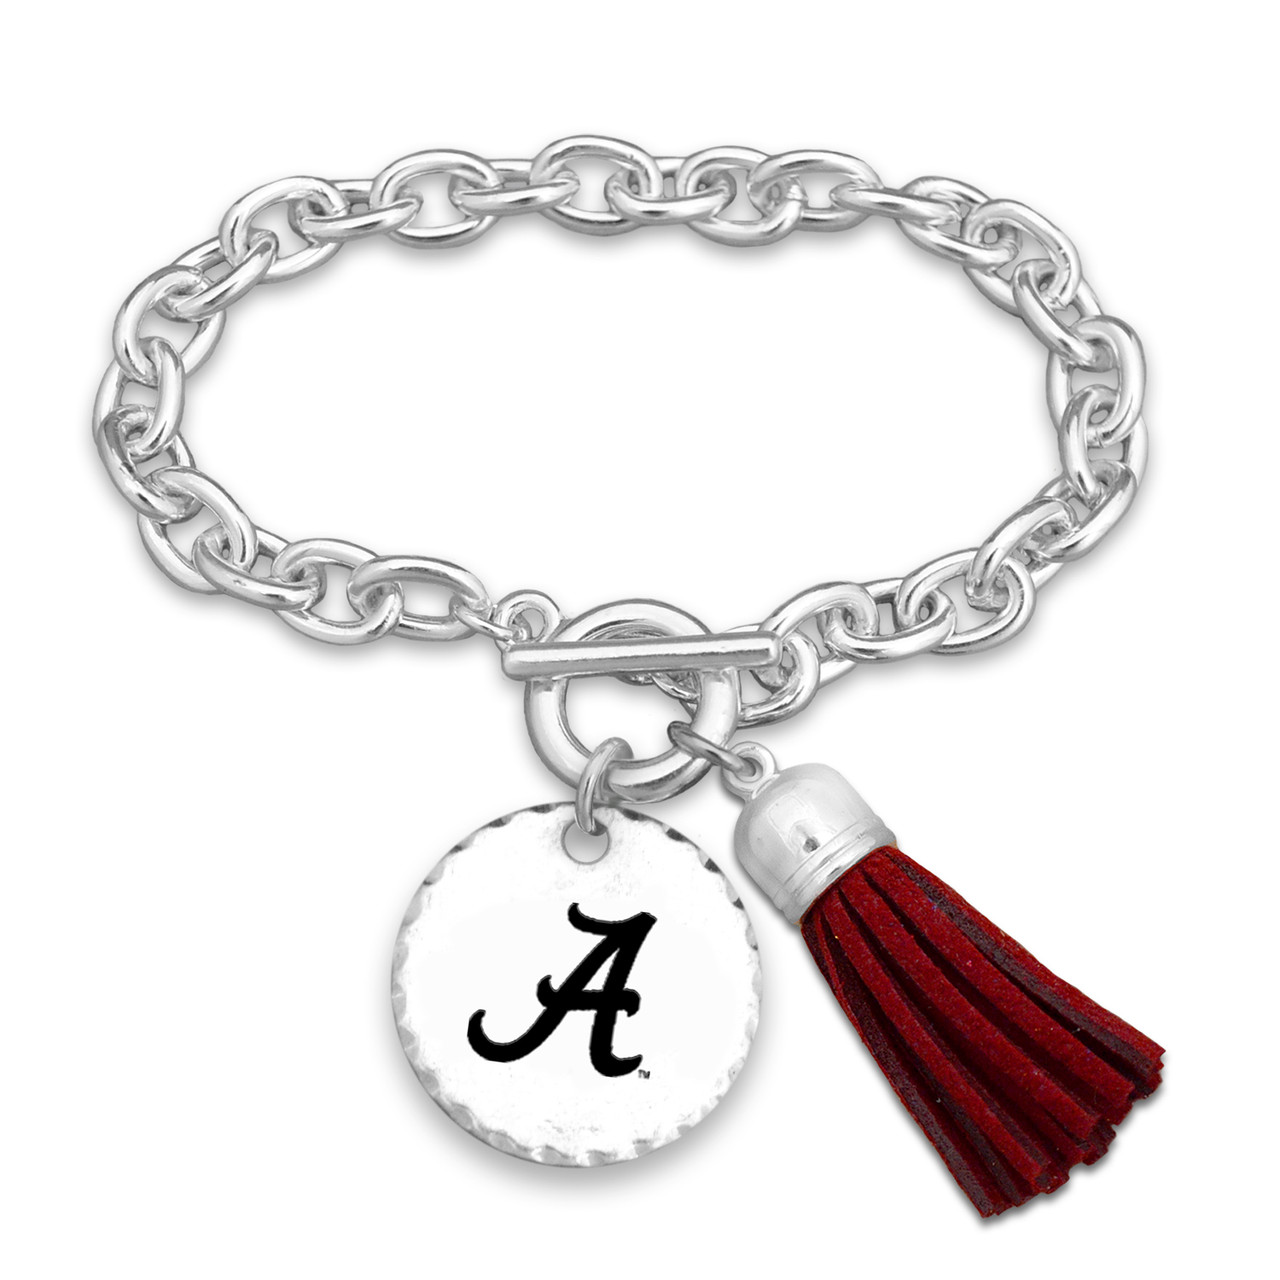 Alabama Crimson Tide Bracelet- Fringe Benefits